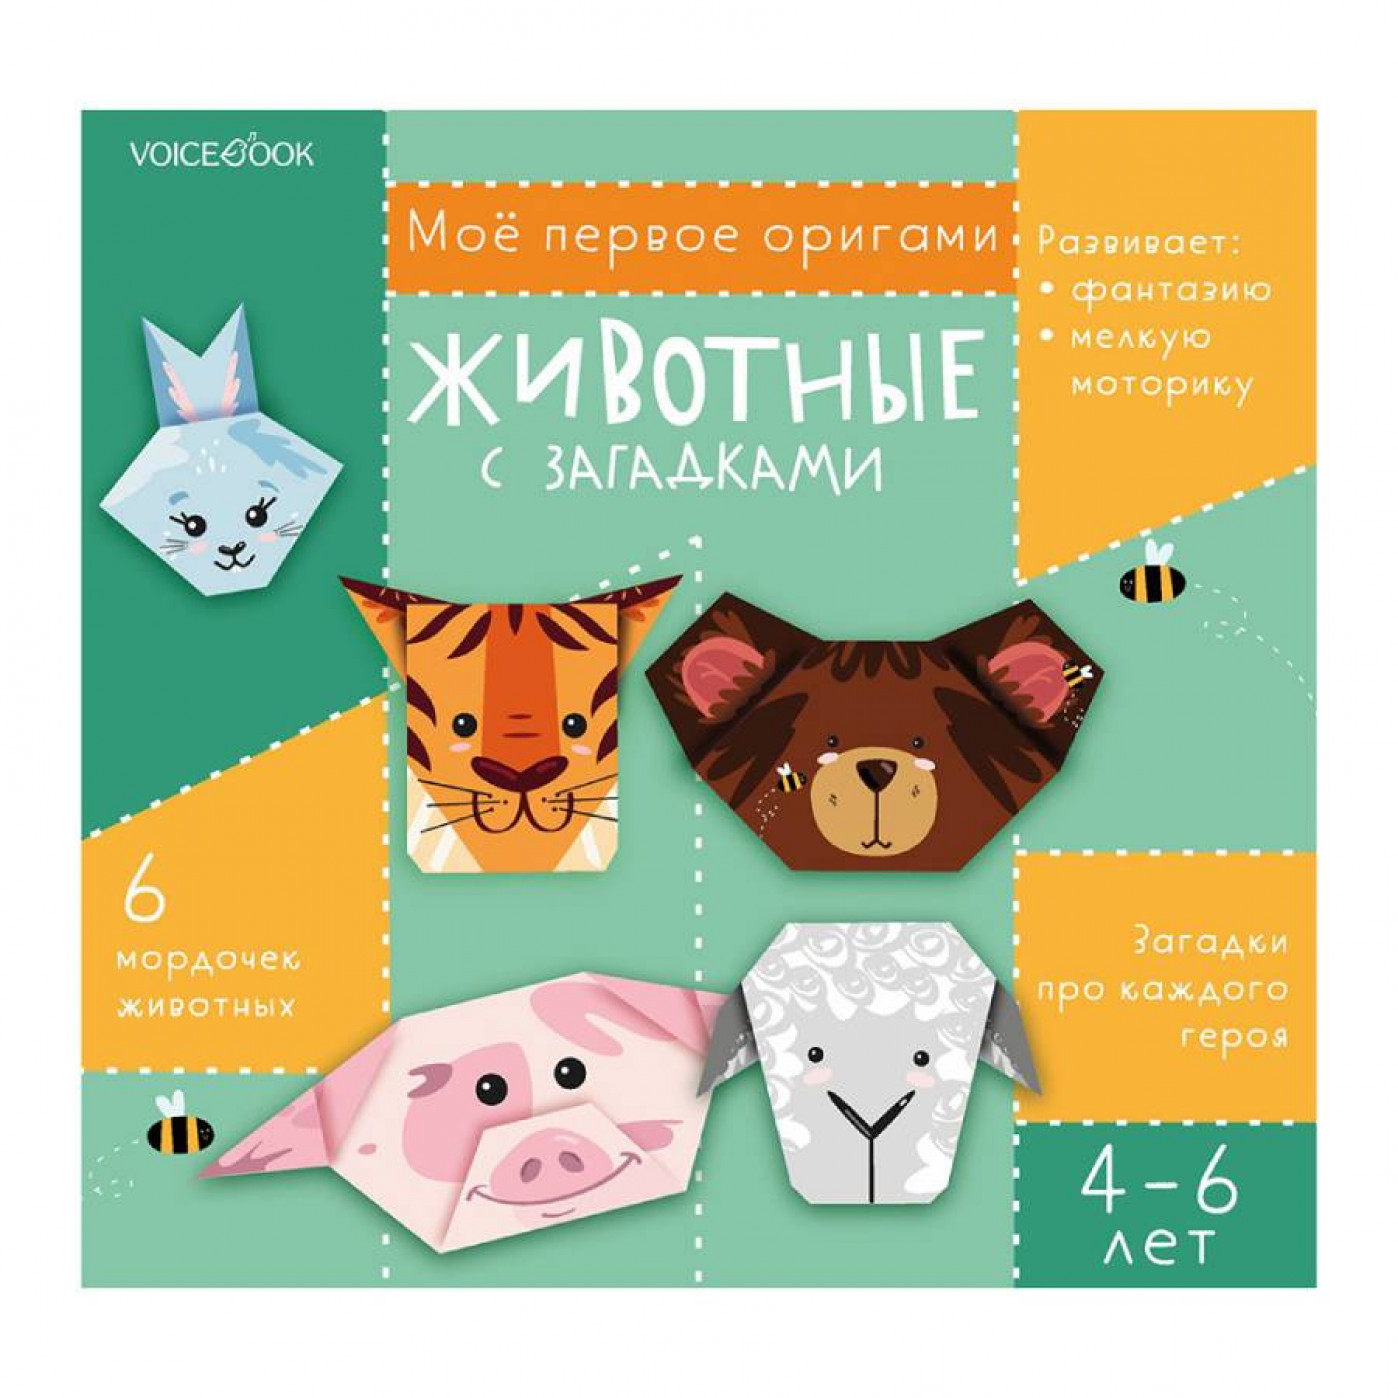 Подарки своими руками - Модульное оригами | ВКонтакте